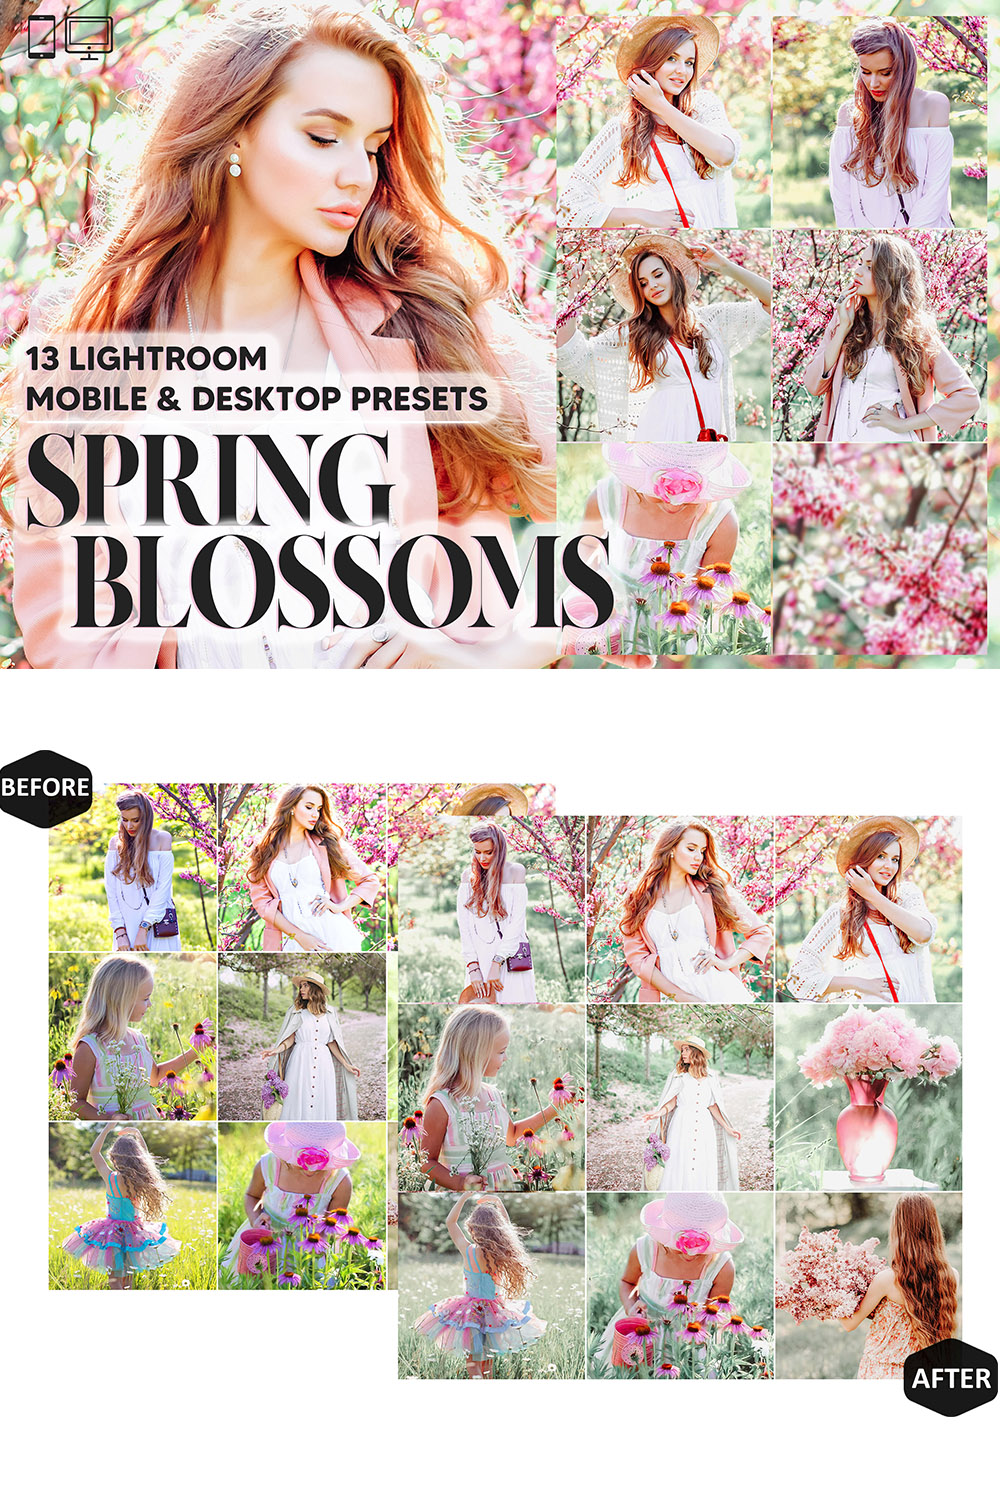 13 Spring Blossoms Lightroom Presets, Pastel Pink Mobile Preset, Natural Bright Desktop Lifestyle Portrait Theme For Instagram LR Filter DNG pinterest preview image.